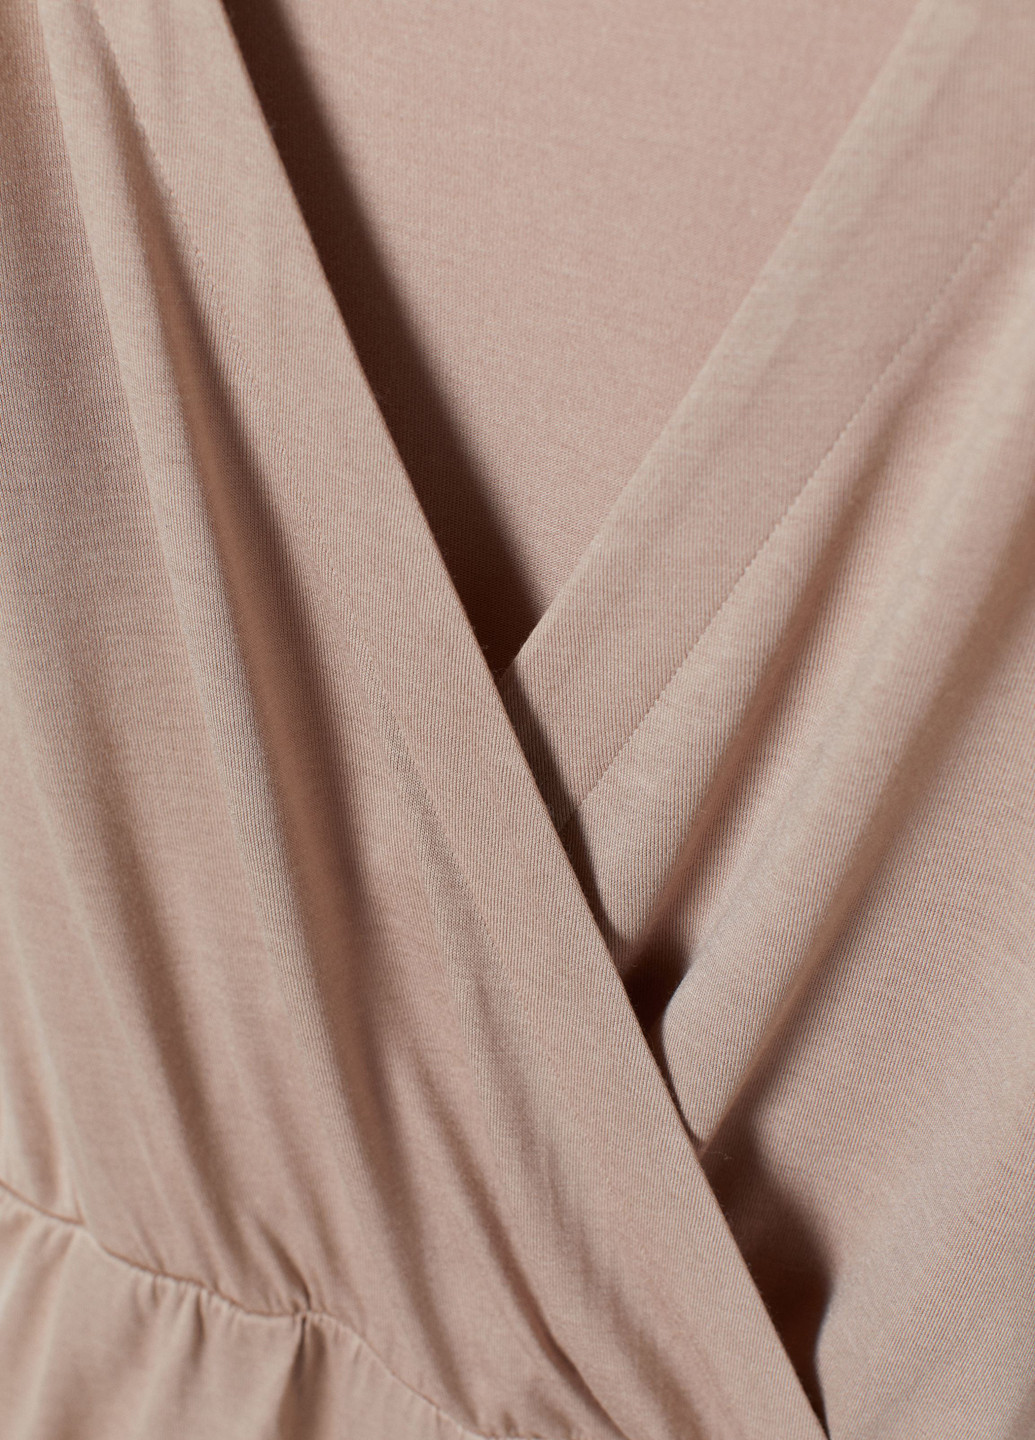 Комбинезон H&M комбинезон-шорты меланж светло-бежевый кэжуал вискоза